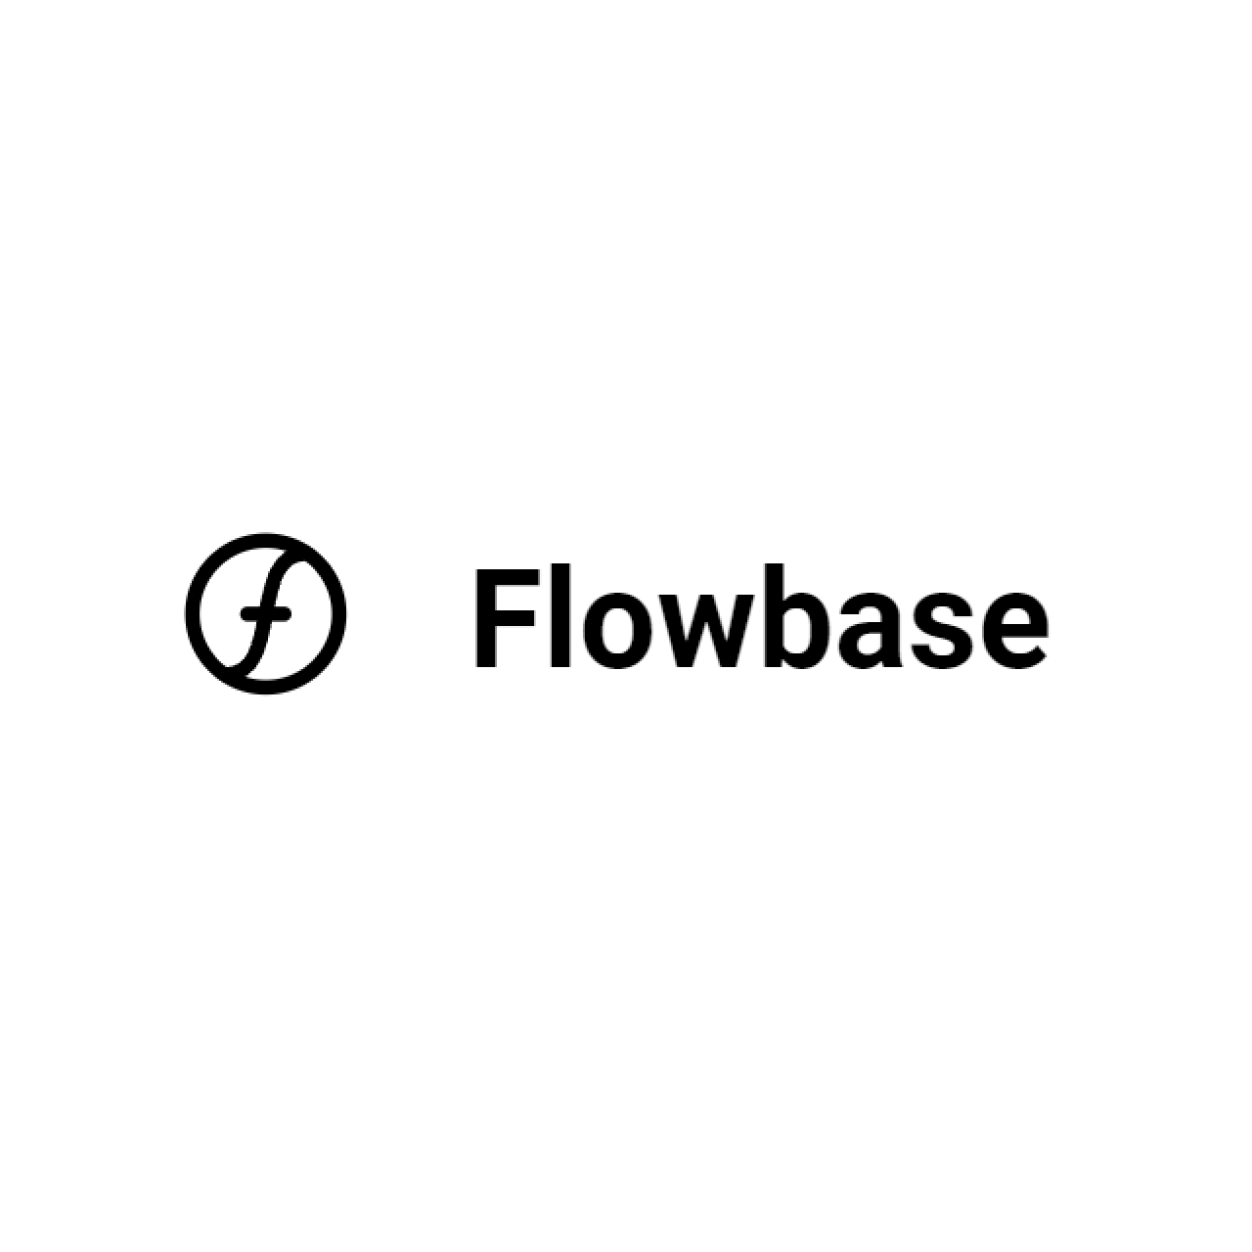 Flowbase